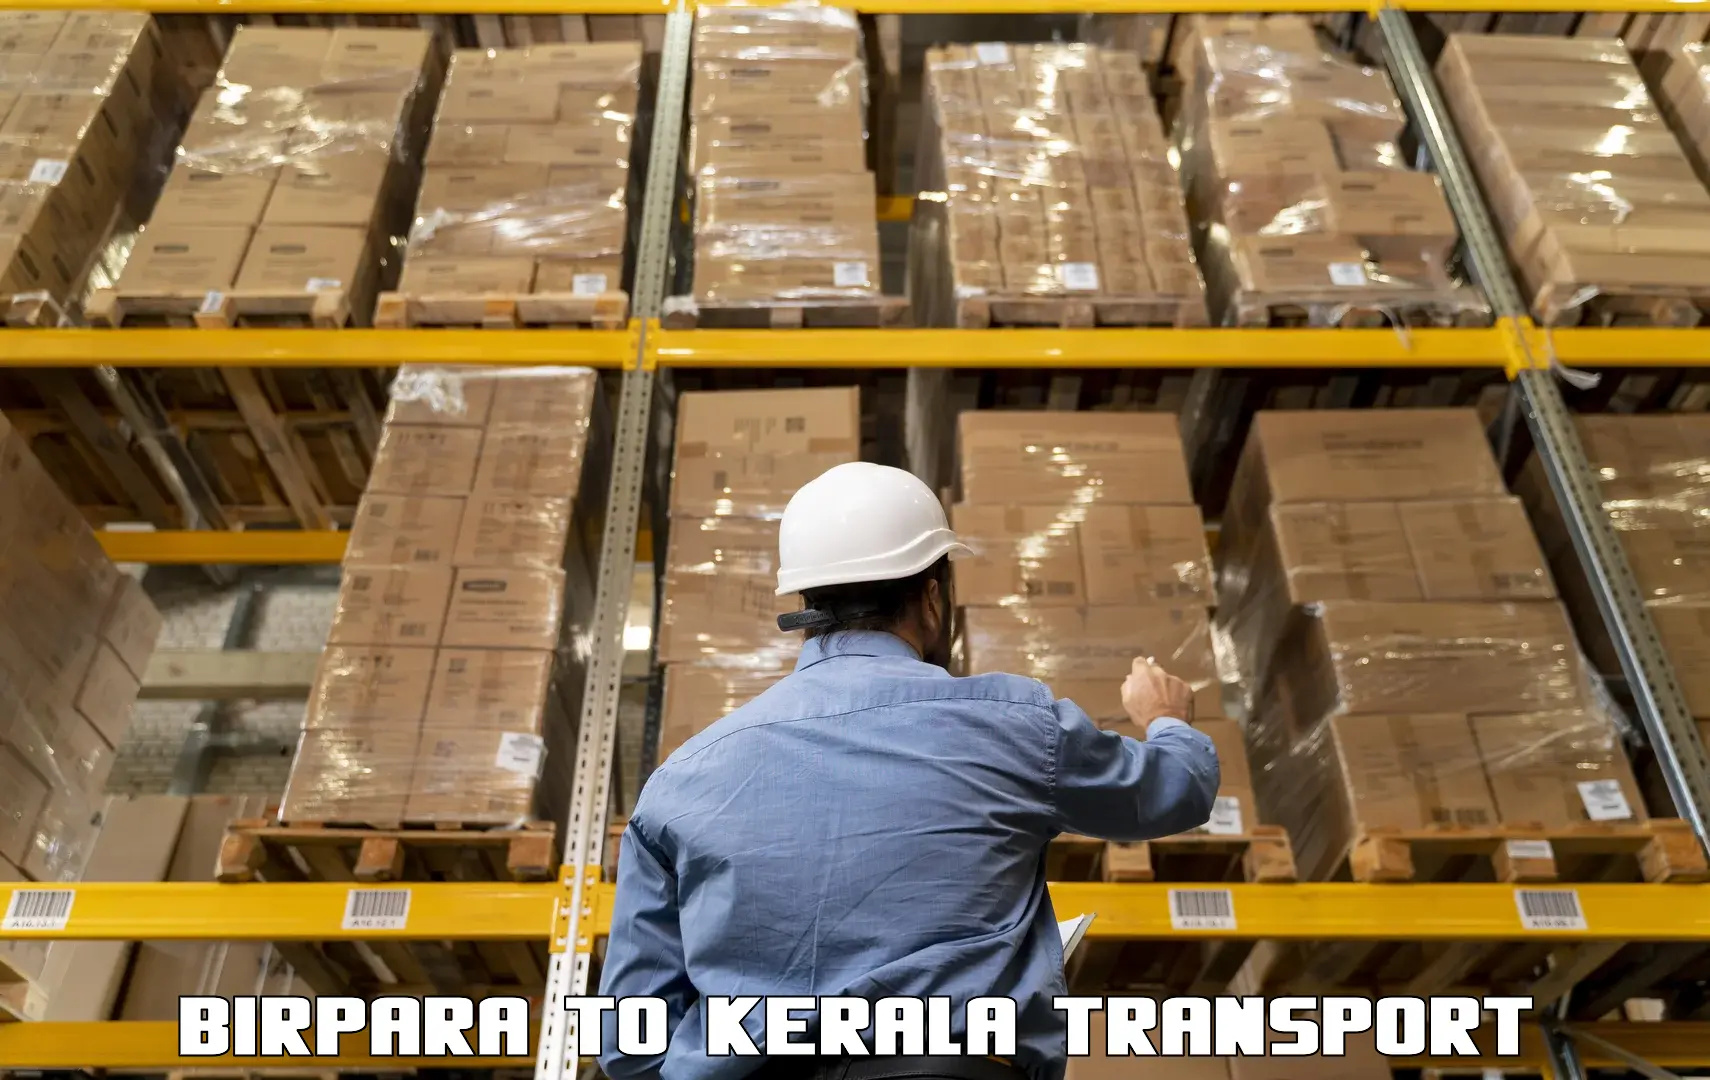 Delivery service Birpara to Kerala